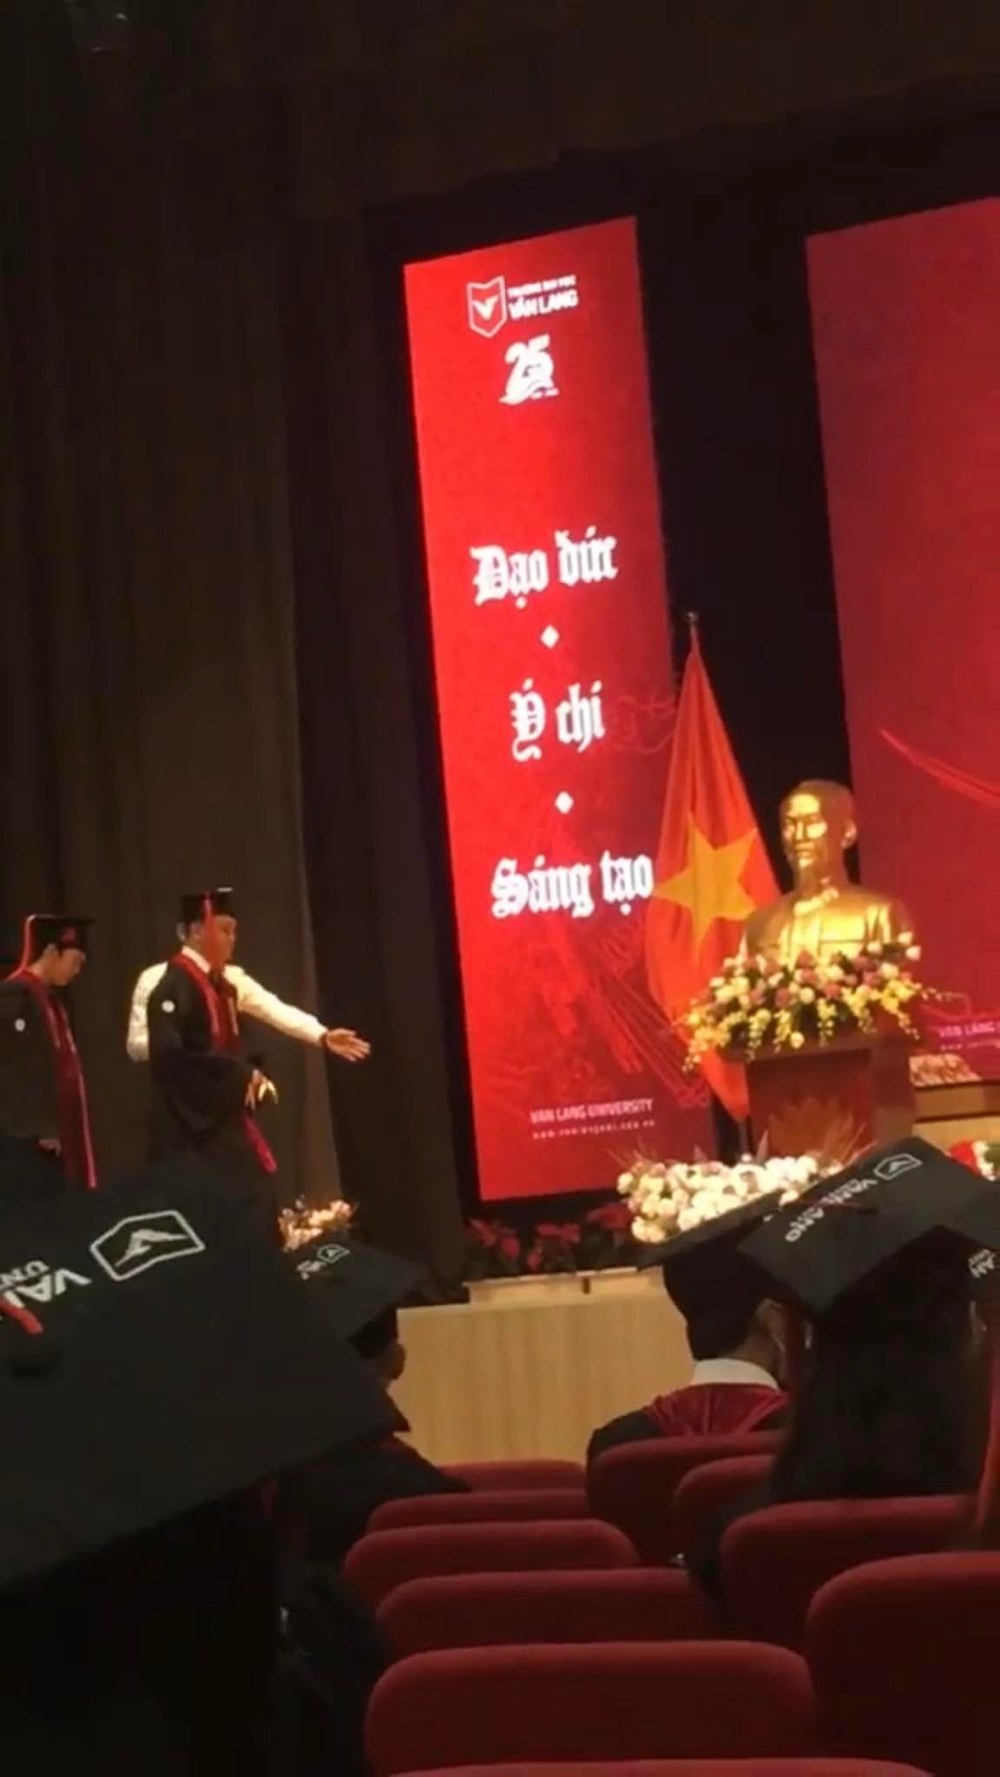  
Nam sinh được mời ra giữa sân khấu để nhận bằng tốt nghiệp. (Ảnh: Chụp màn hình TikTok @itsnatepham)